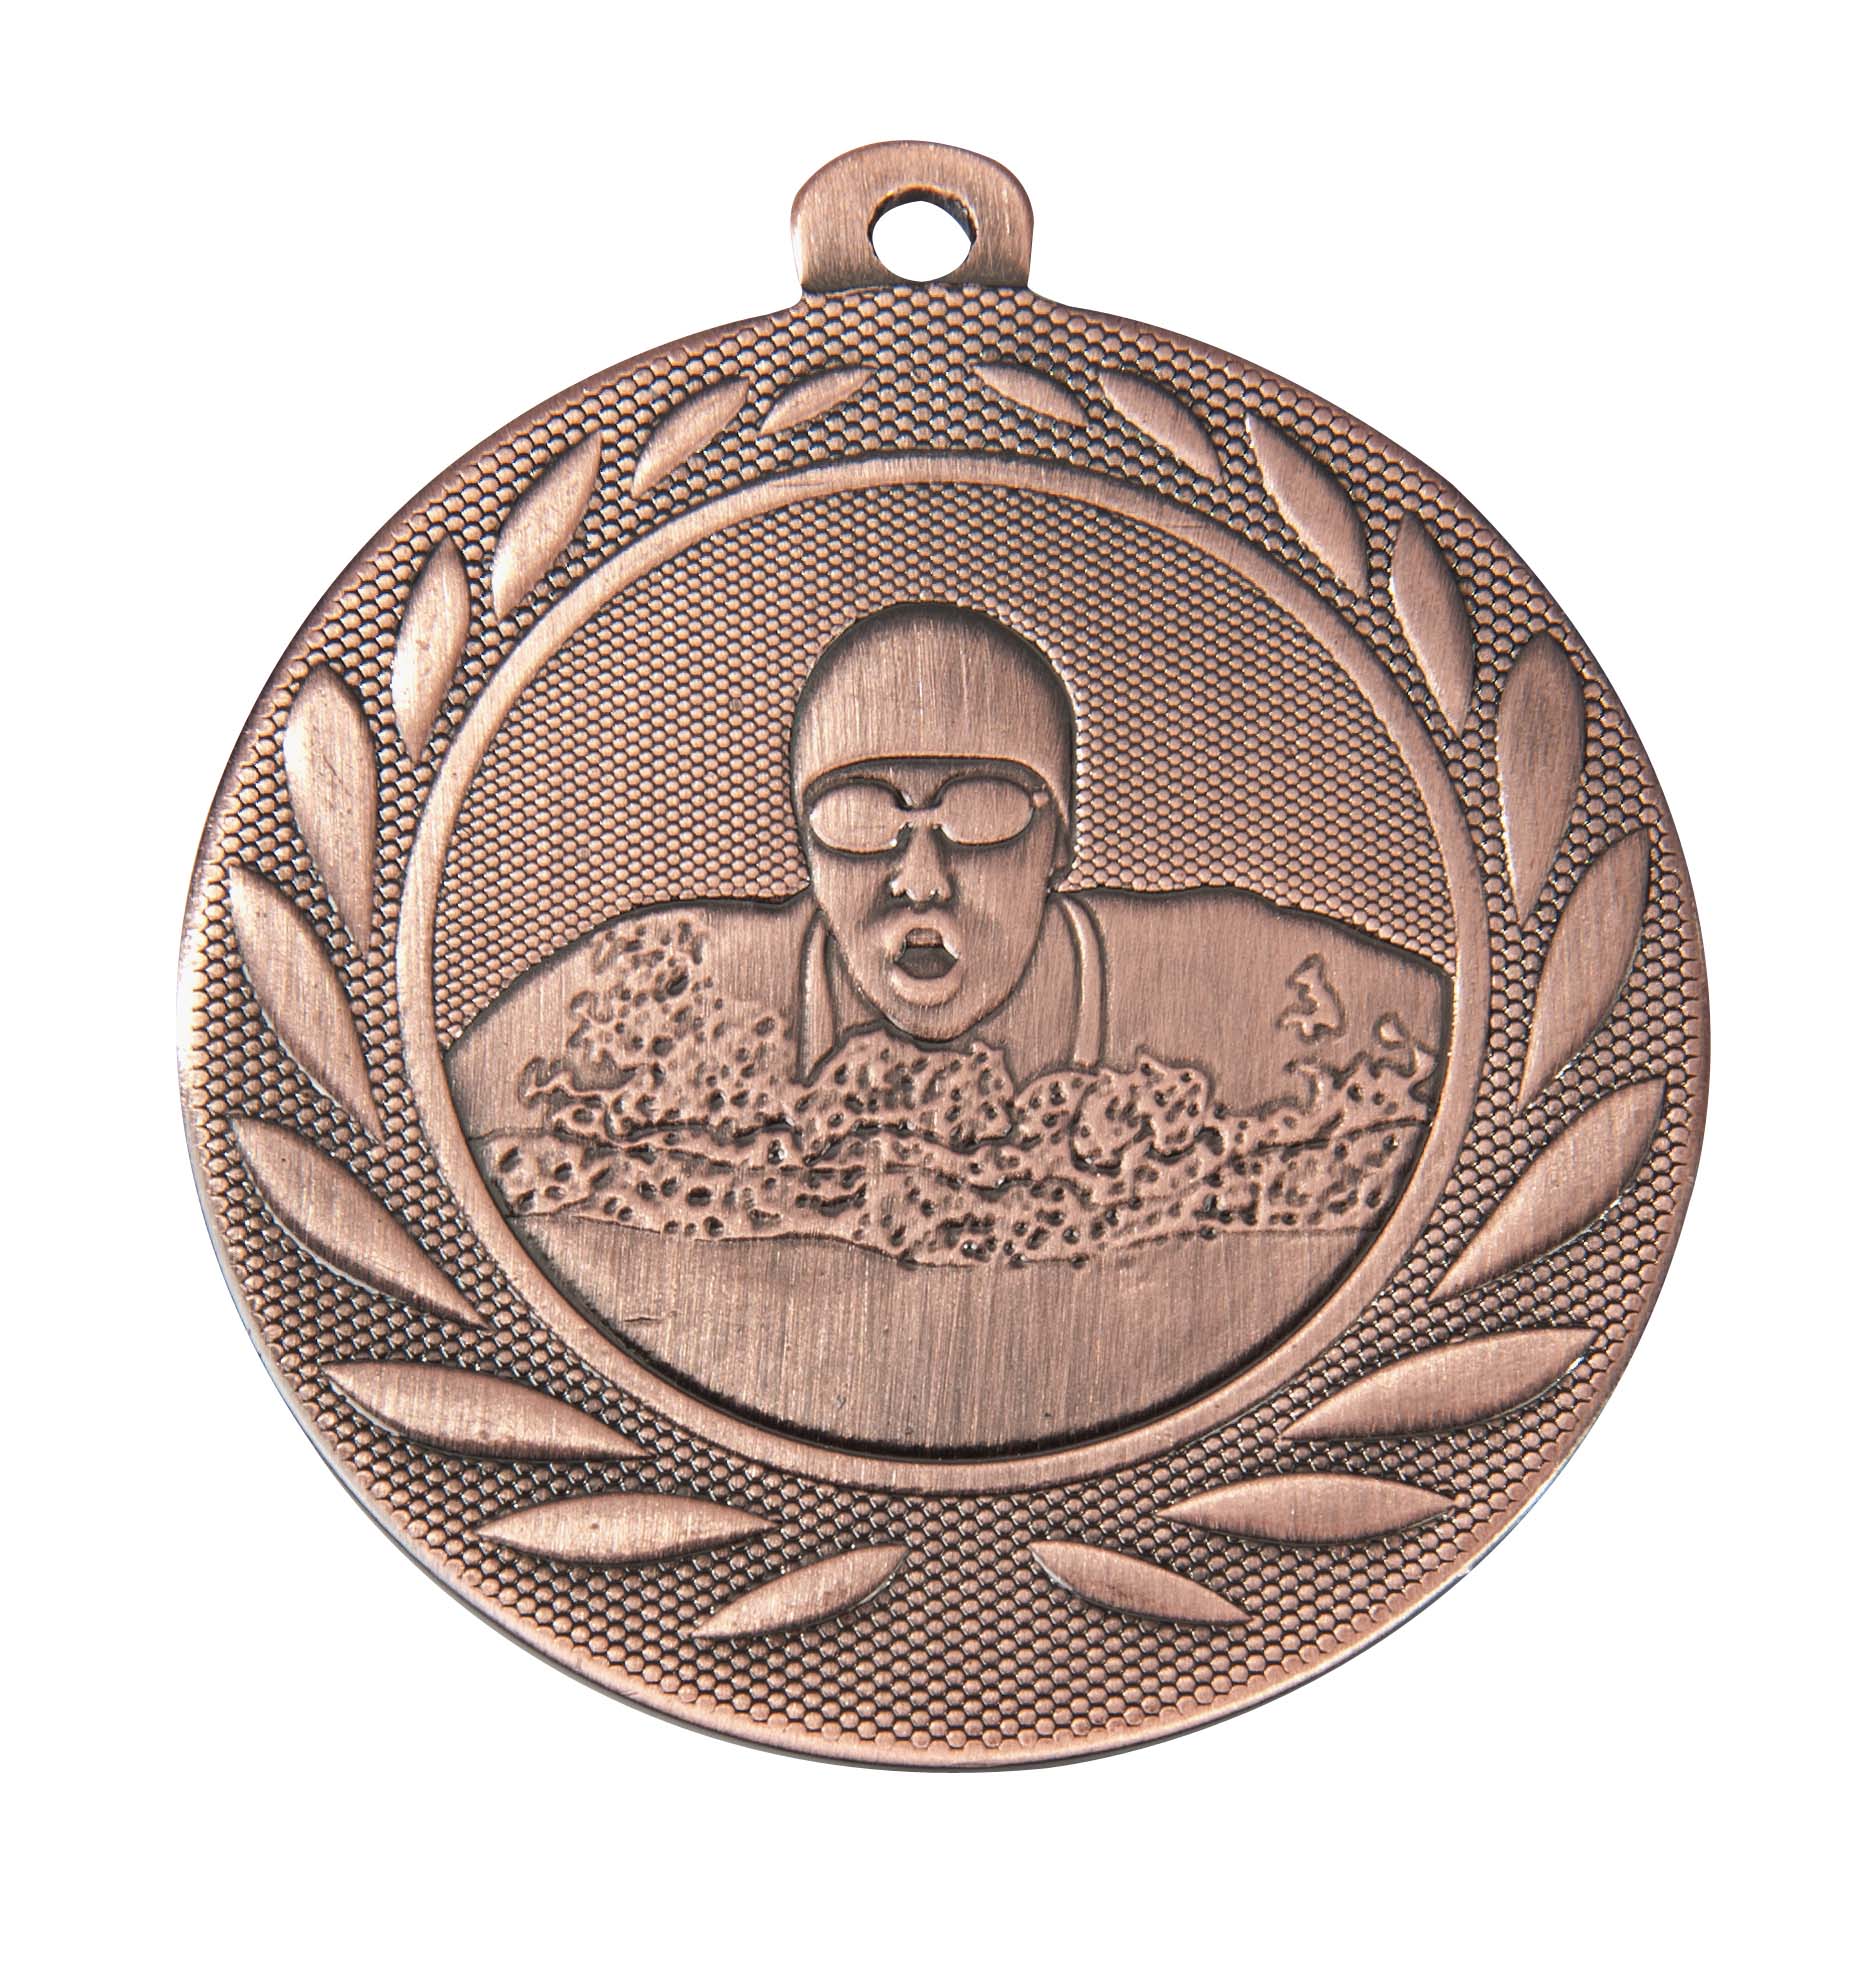 Schwimm-Medaille DI5000H inkl. Band und Beschriftung Bronze Fertig montiert gegen Aufpreis